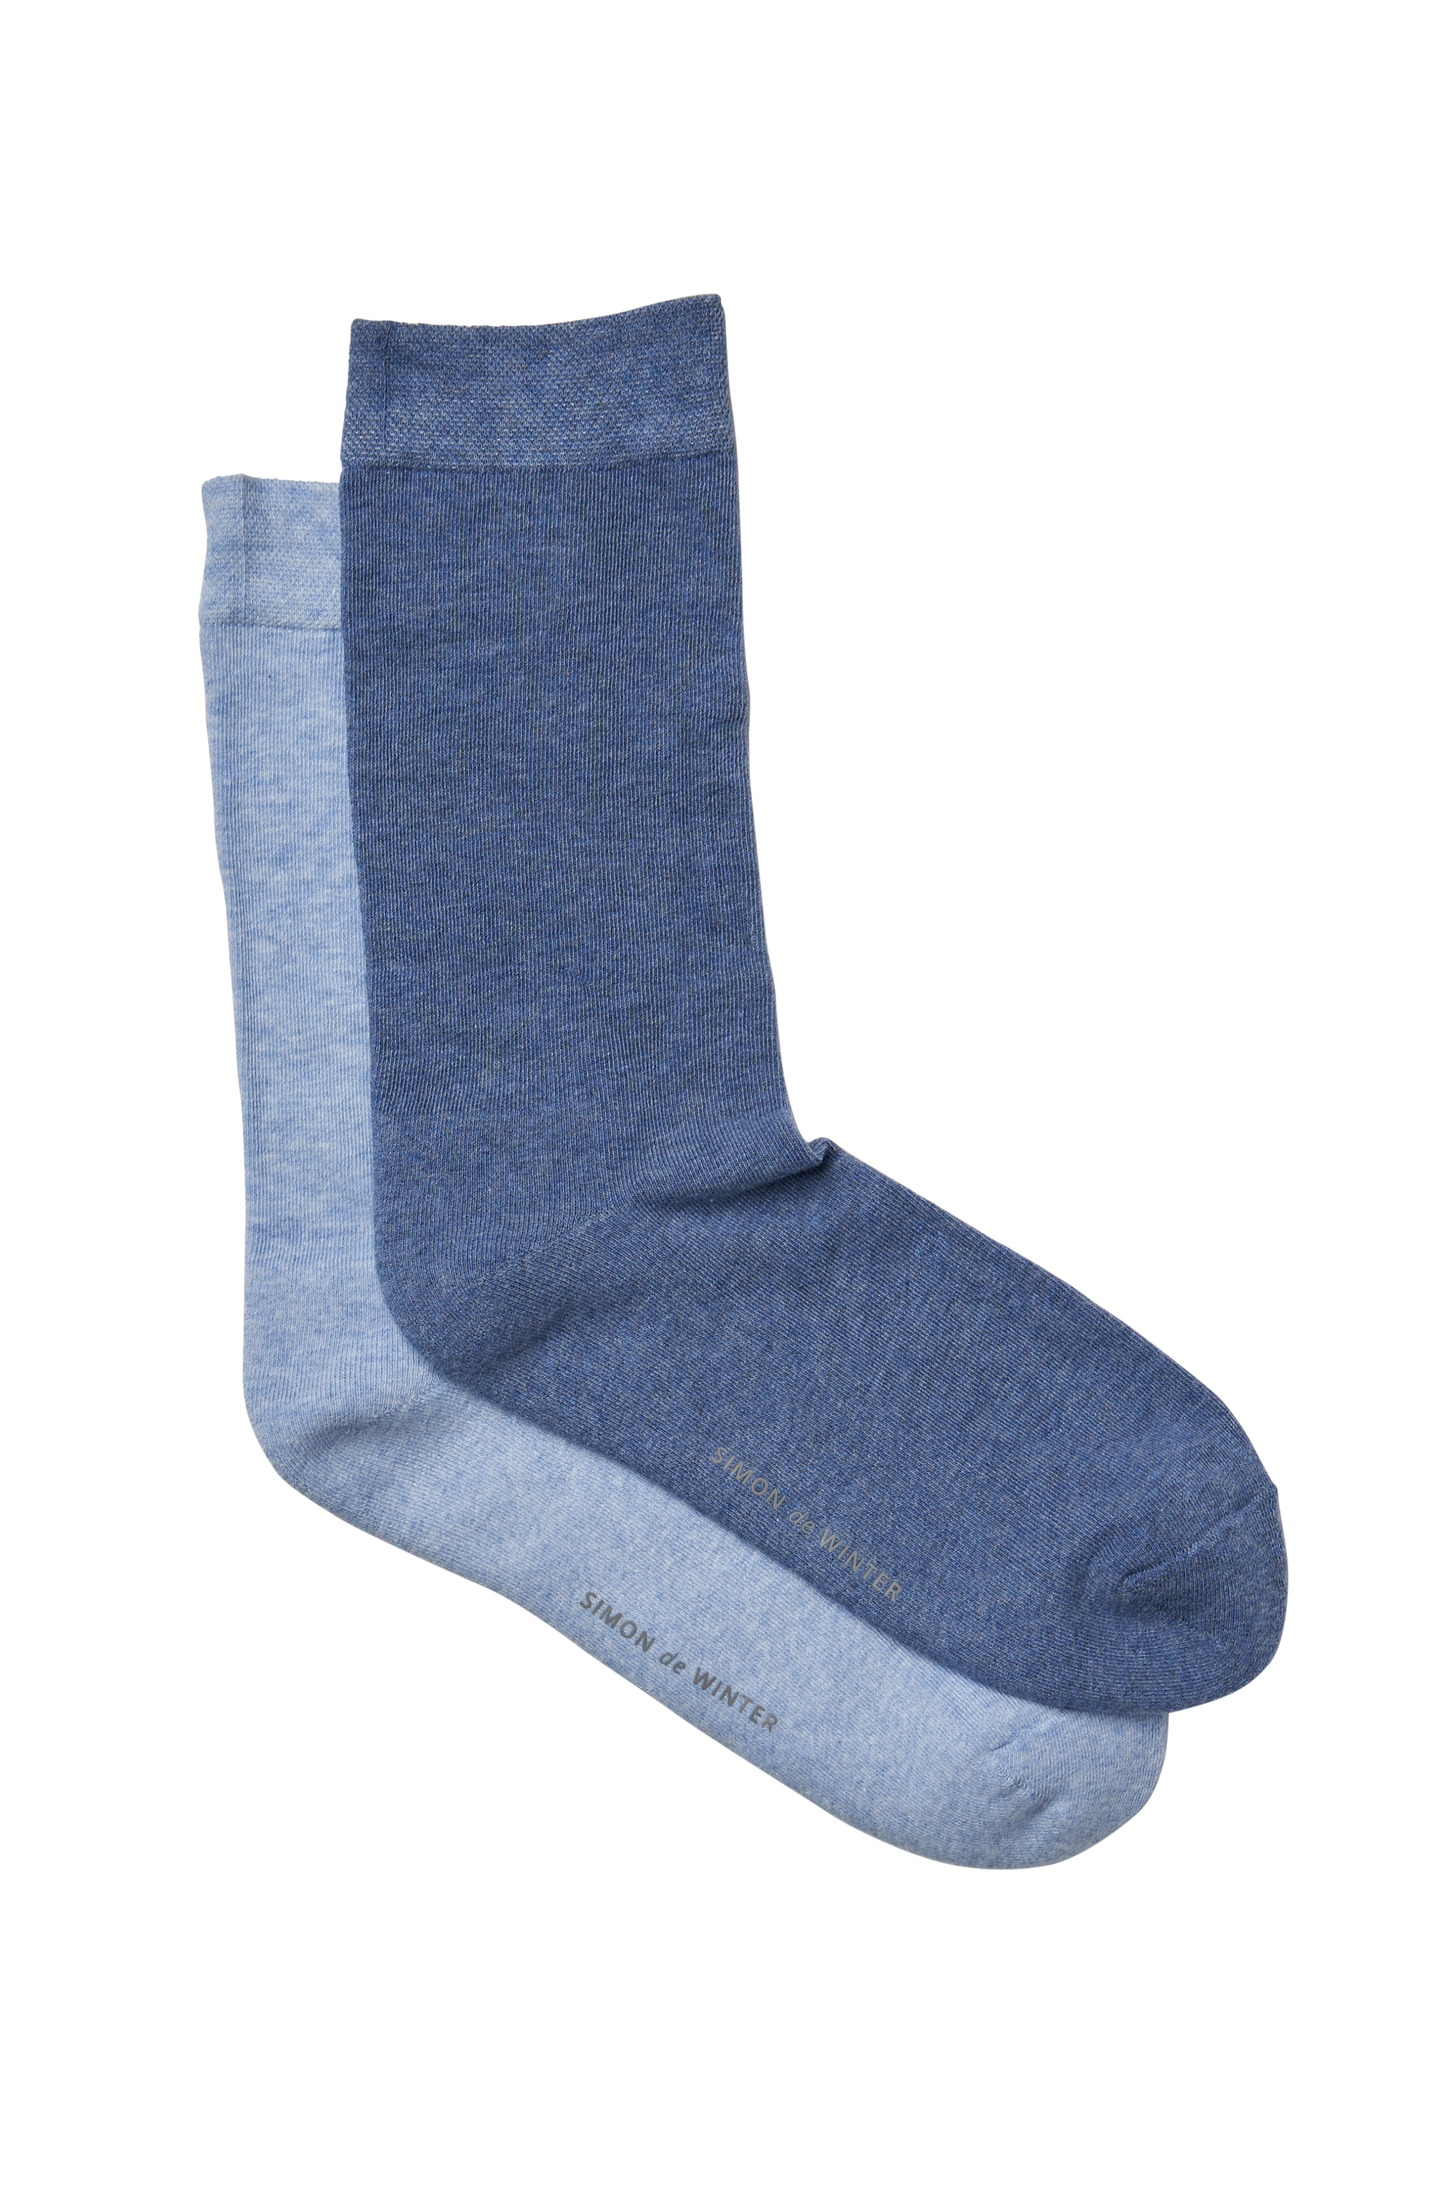 2 Pack Simon de Winter Women's Plain Comfort Cotton Crew Socks in Denim Light Blue